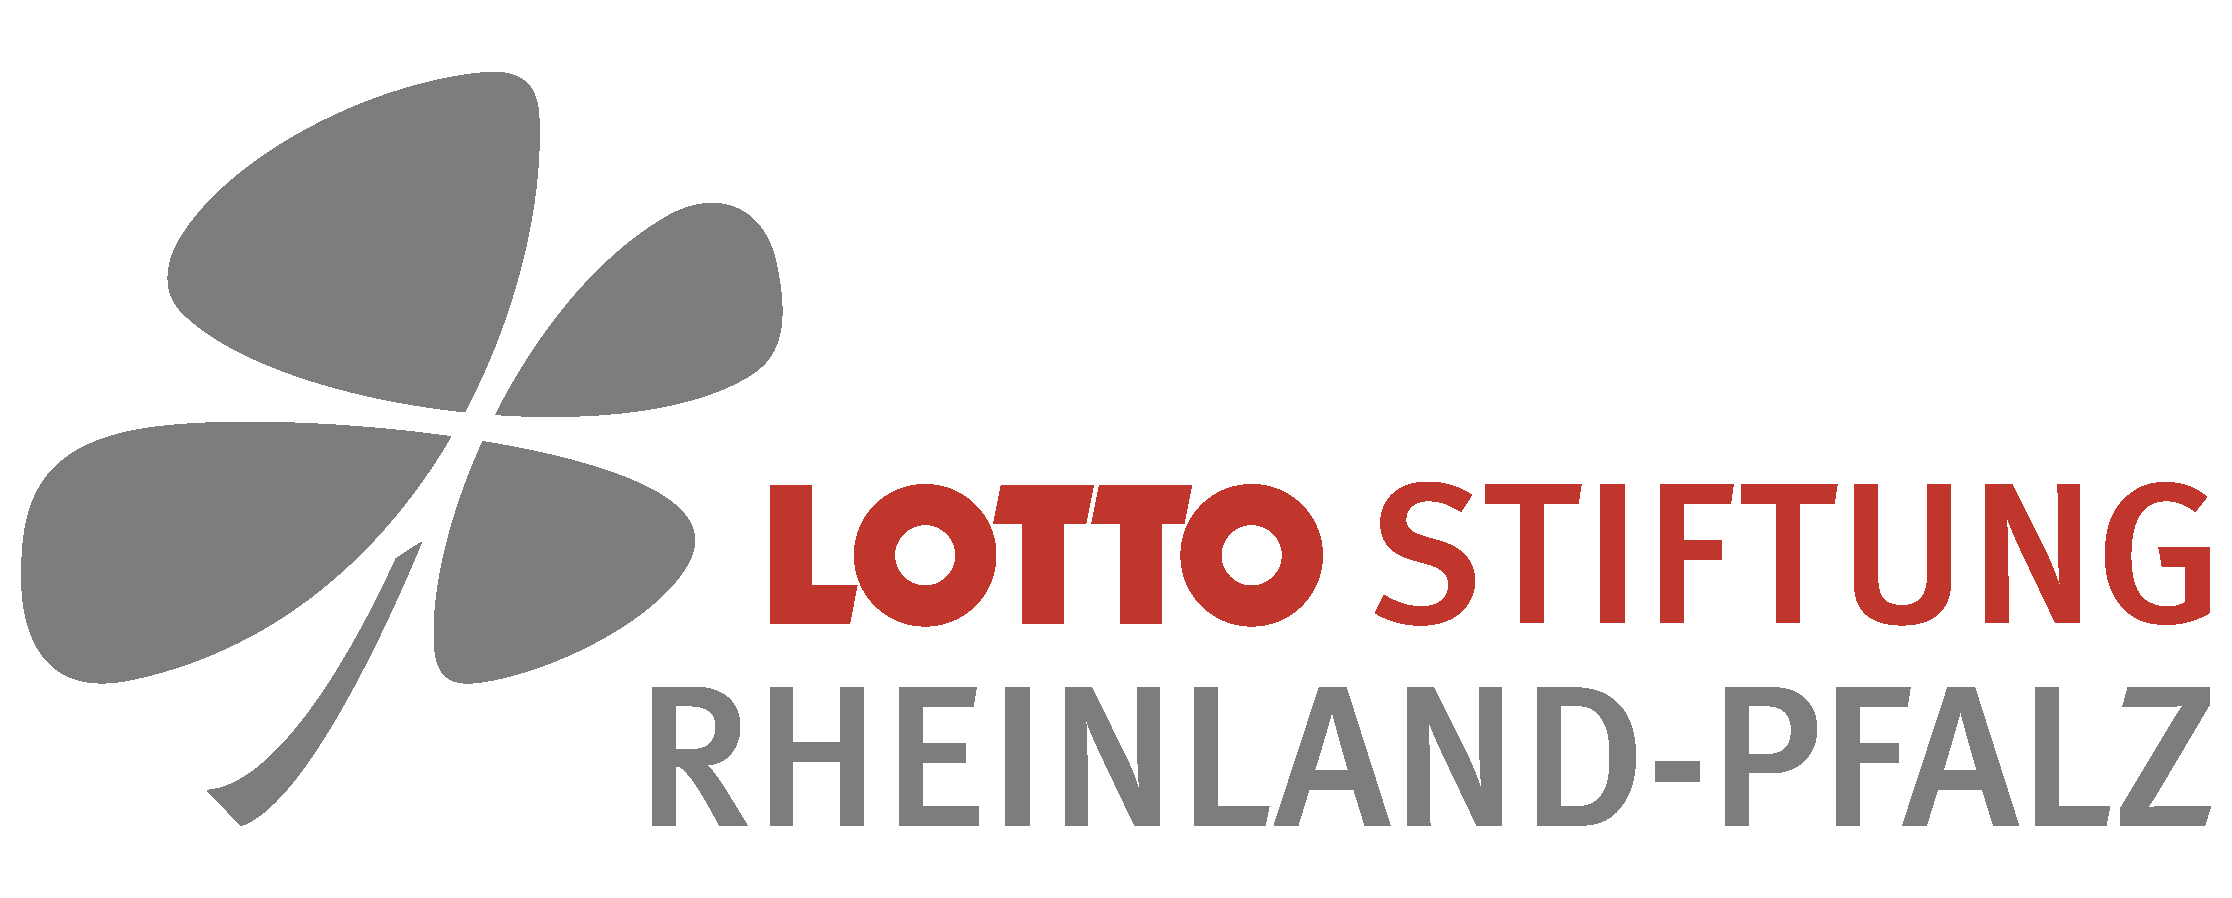 Unionsviertel Kaiserslautern Lotto Stiftung Rheinland-Pfalz